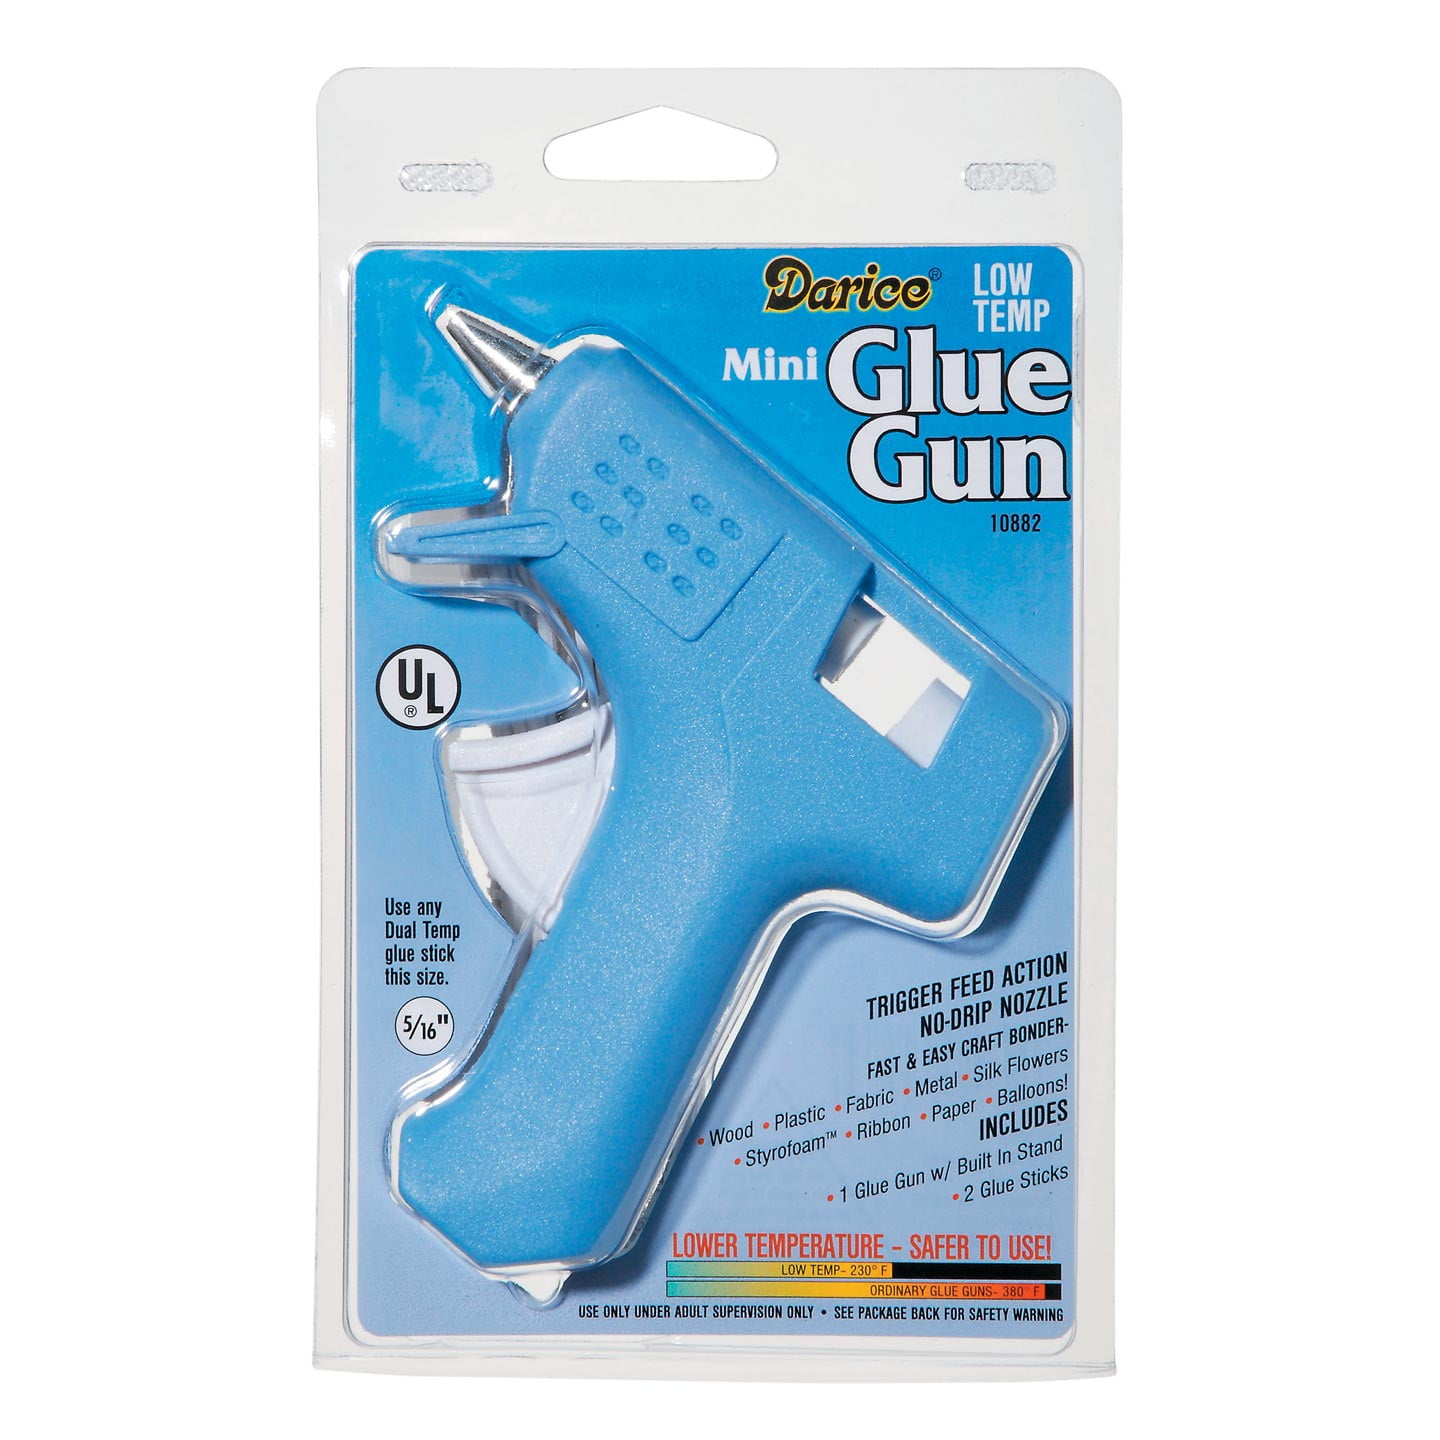 Gorilla Dual Temp Mini Hot Glue Gun Kit with 30 Hot Glue Sticks Pack of 1